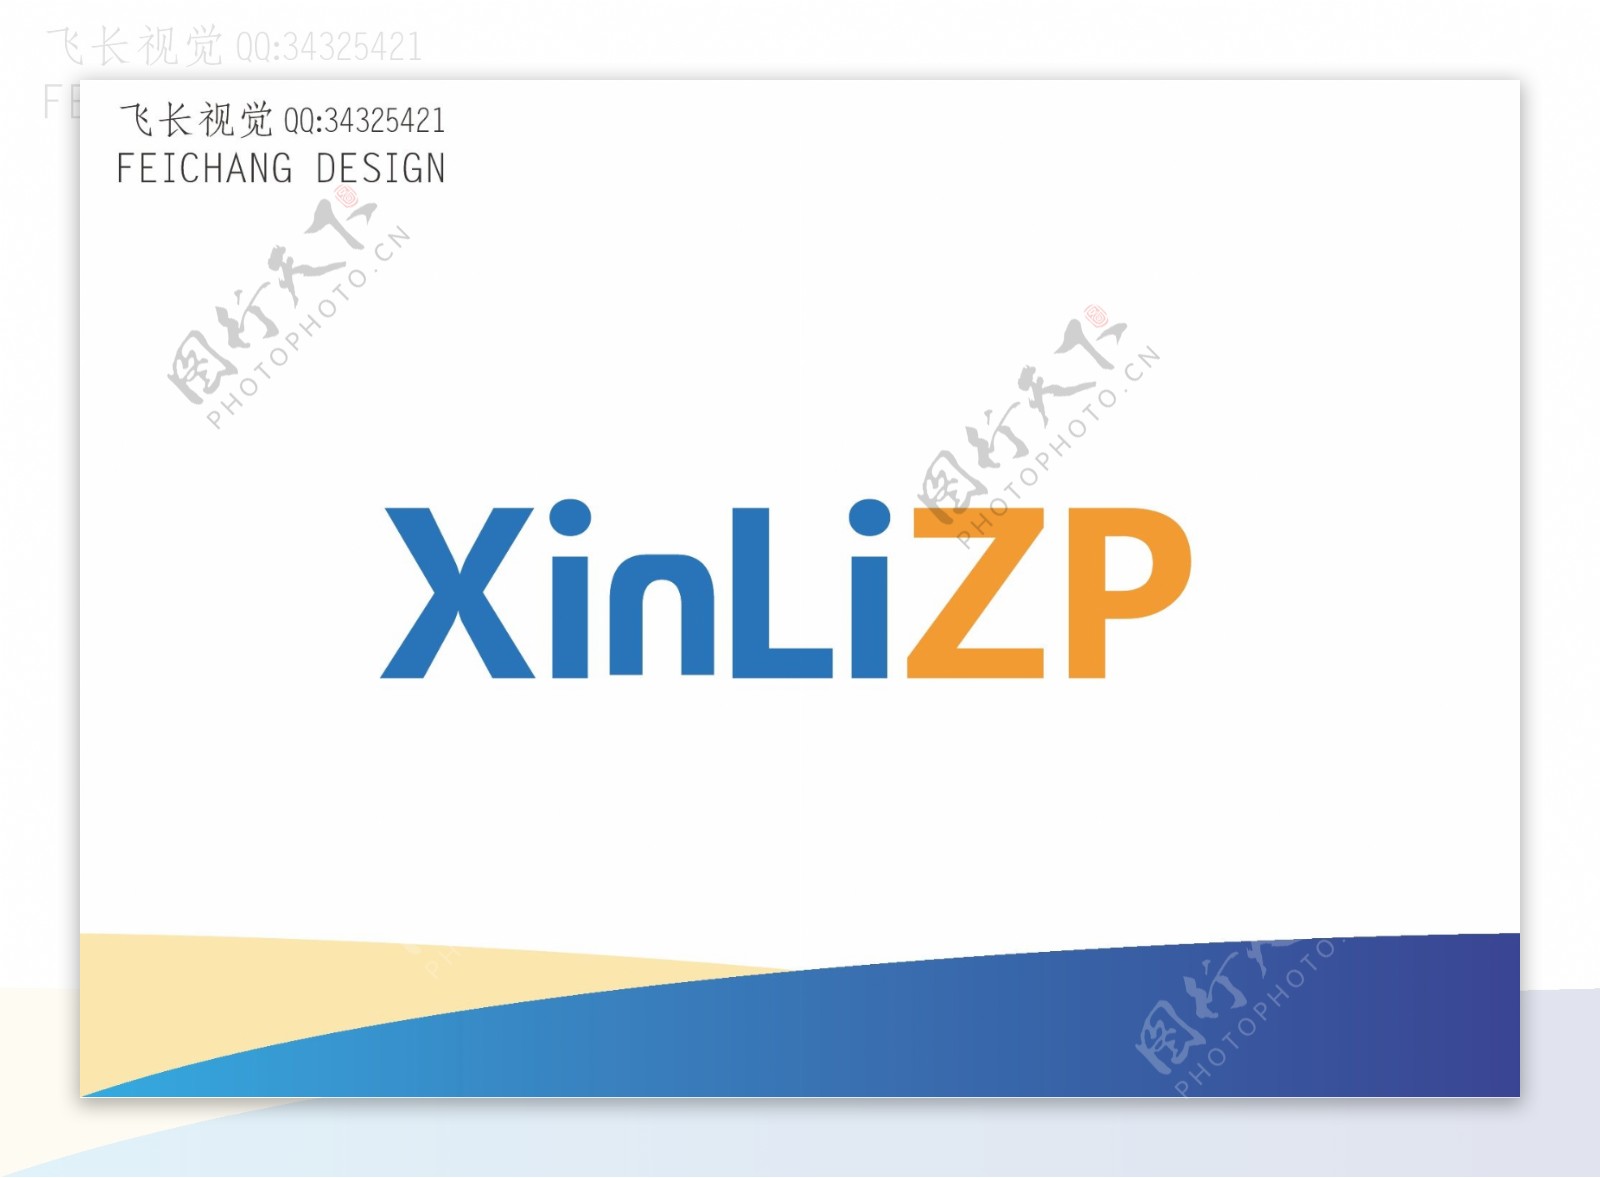 XinLiZP科技标志